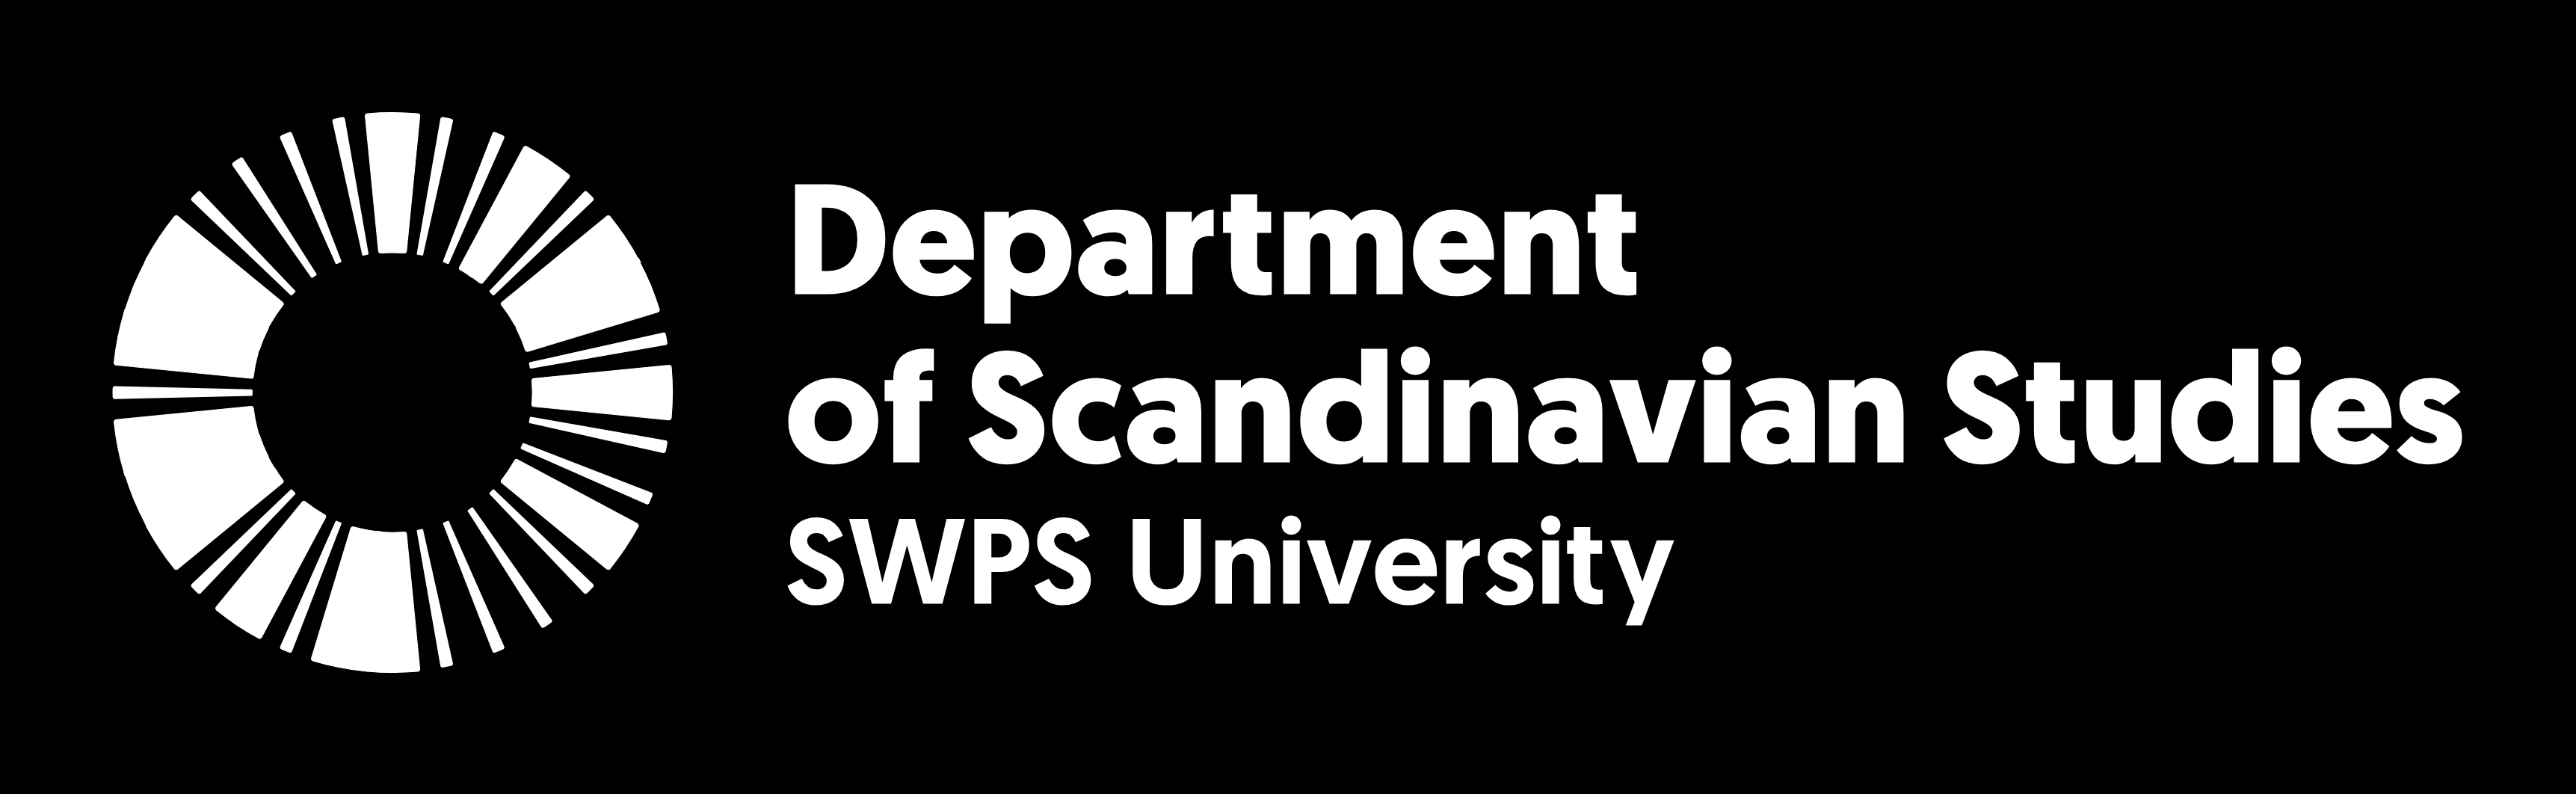 Department of Scandinavian Studies logo